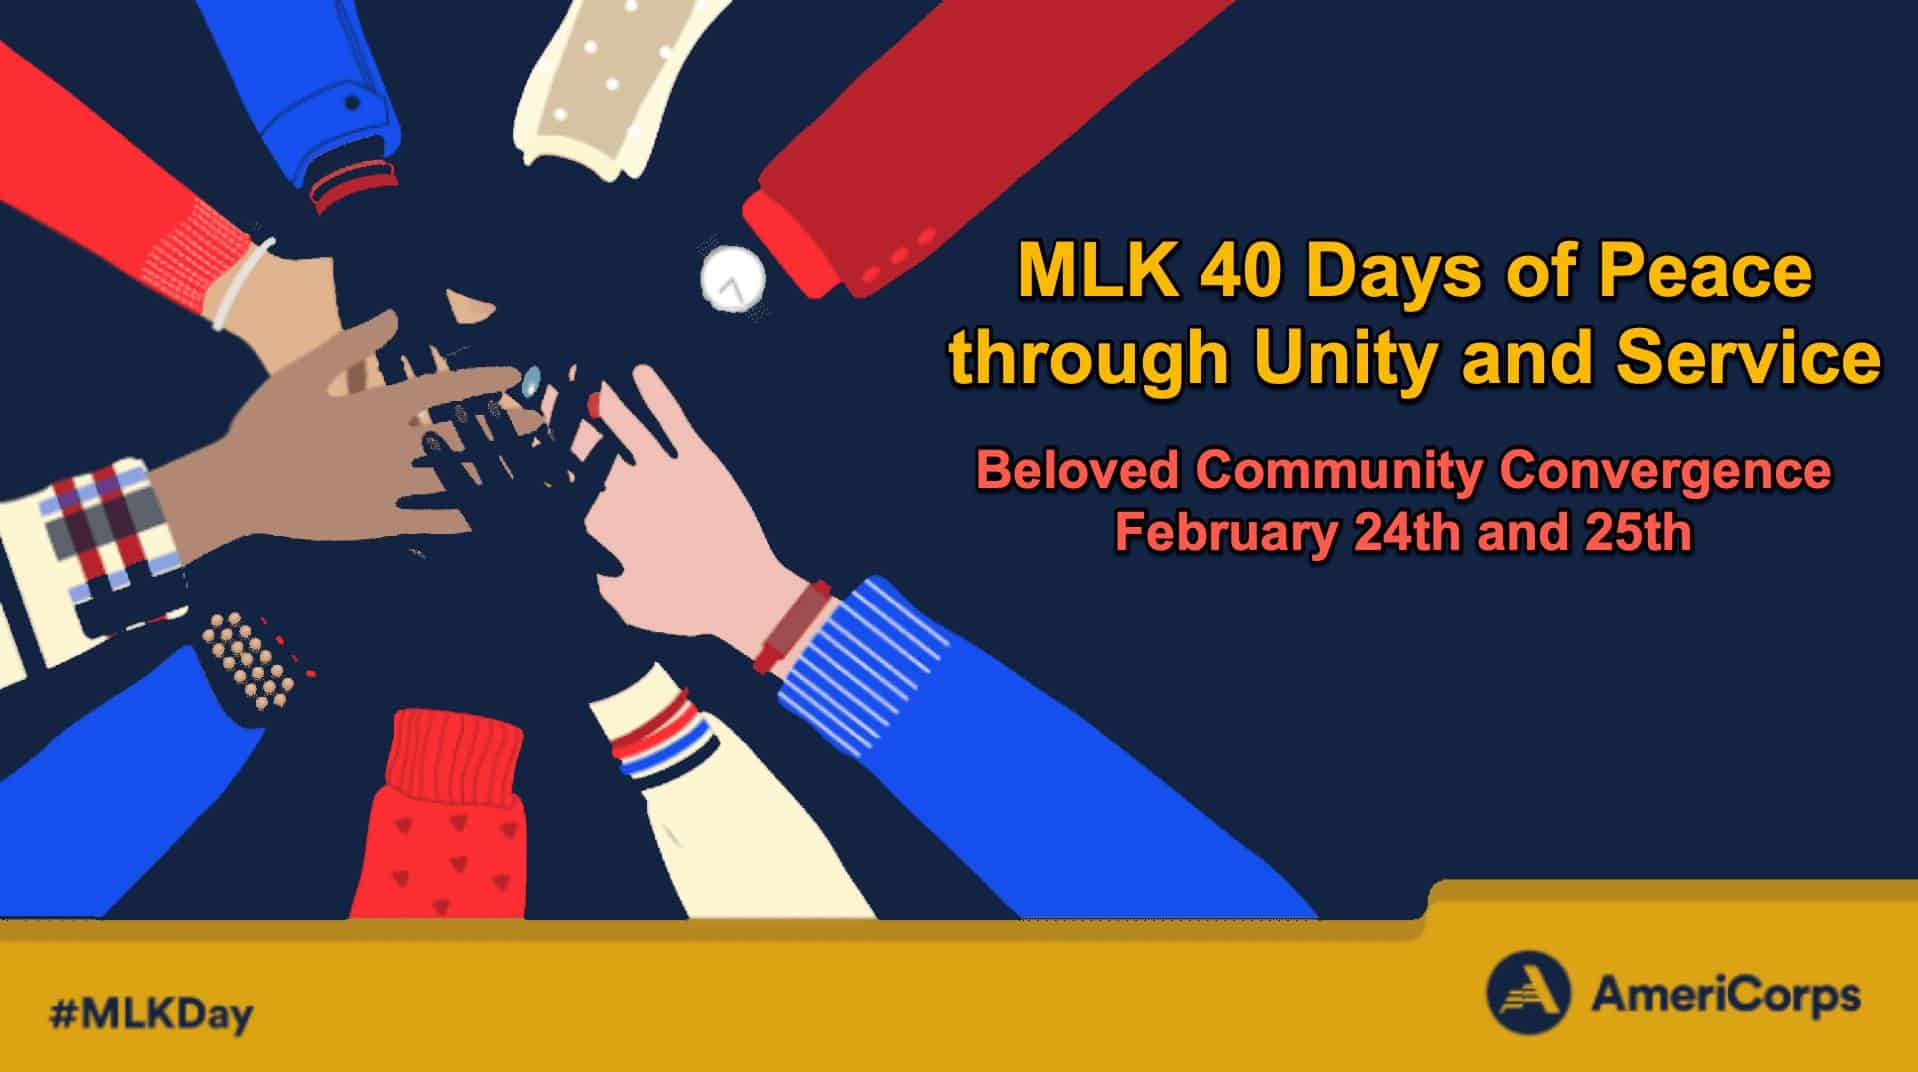 MLK Beloved Community Convergence 2023 banner image.